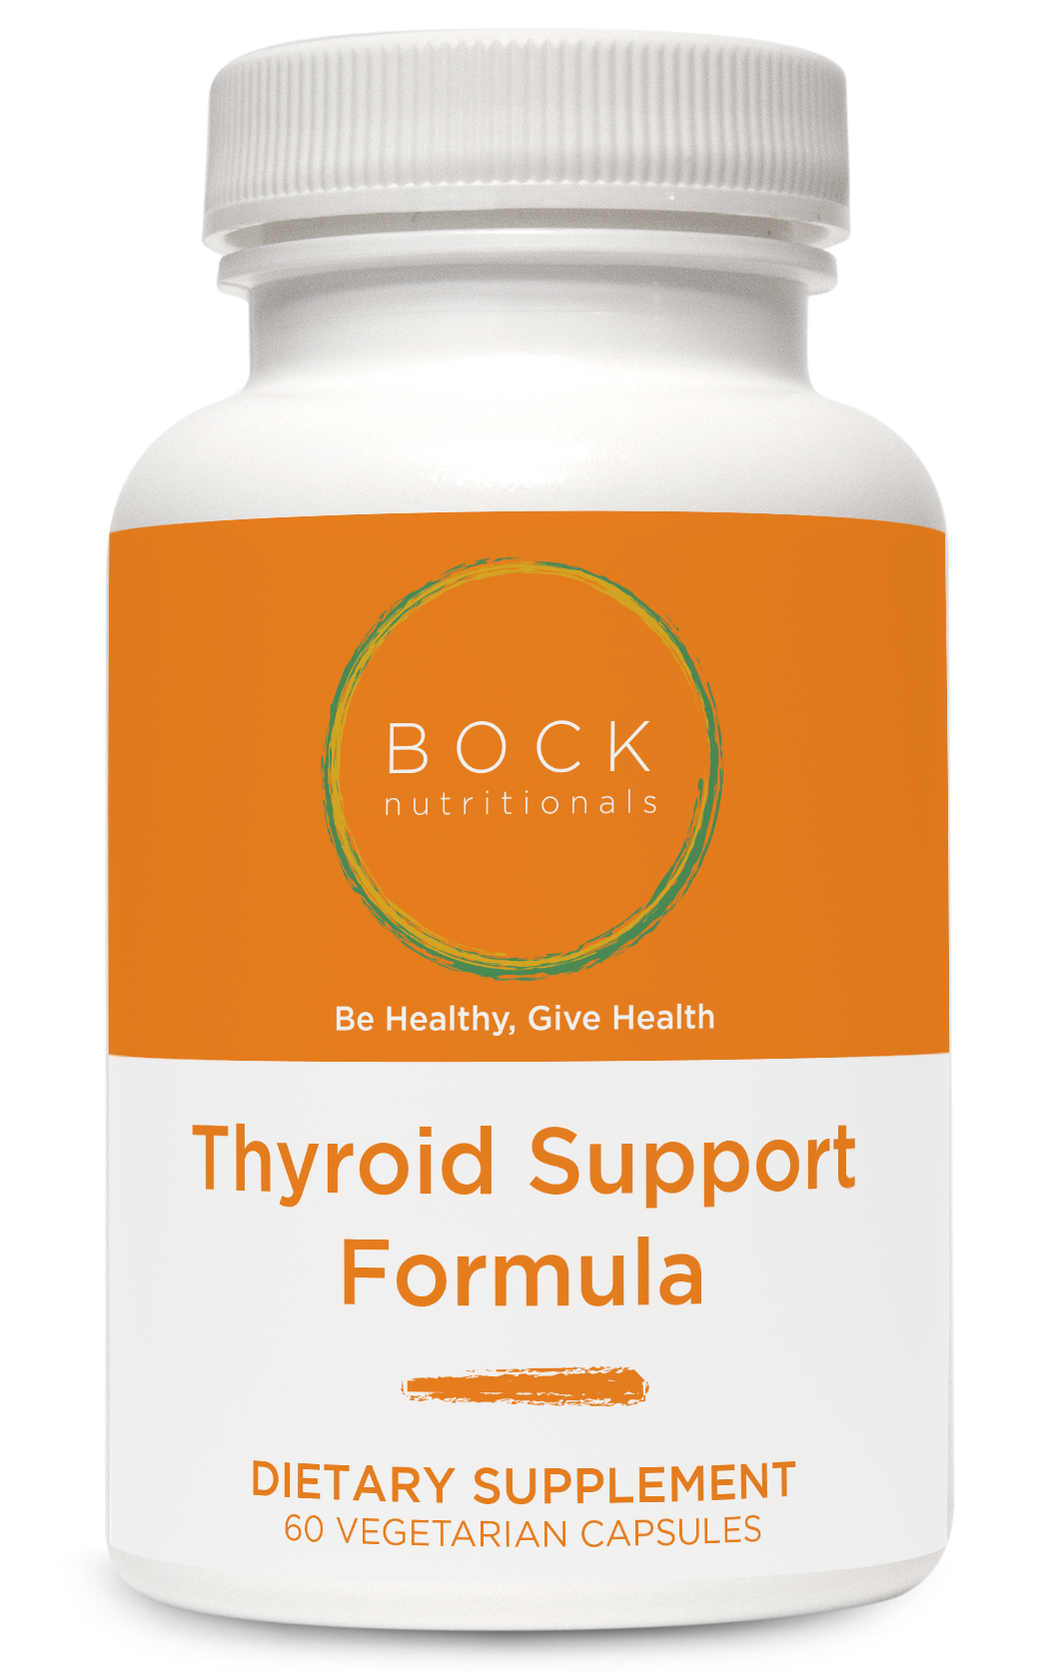 Thyroid Support Formula